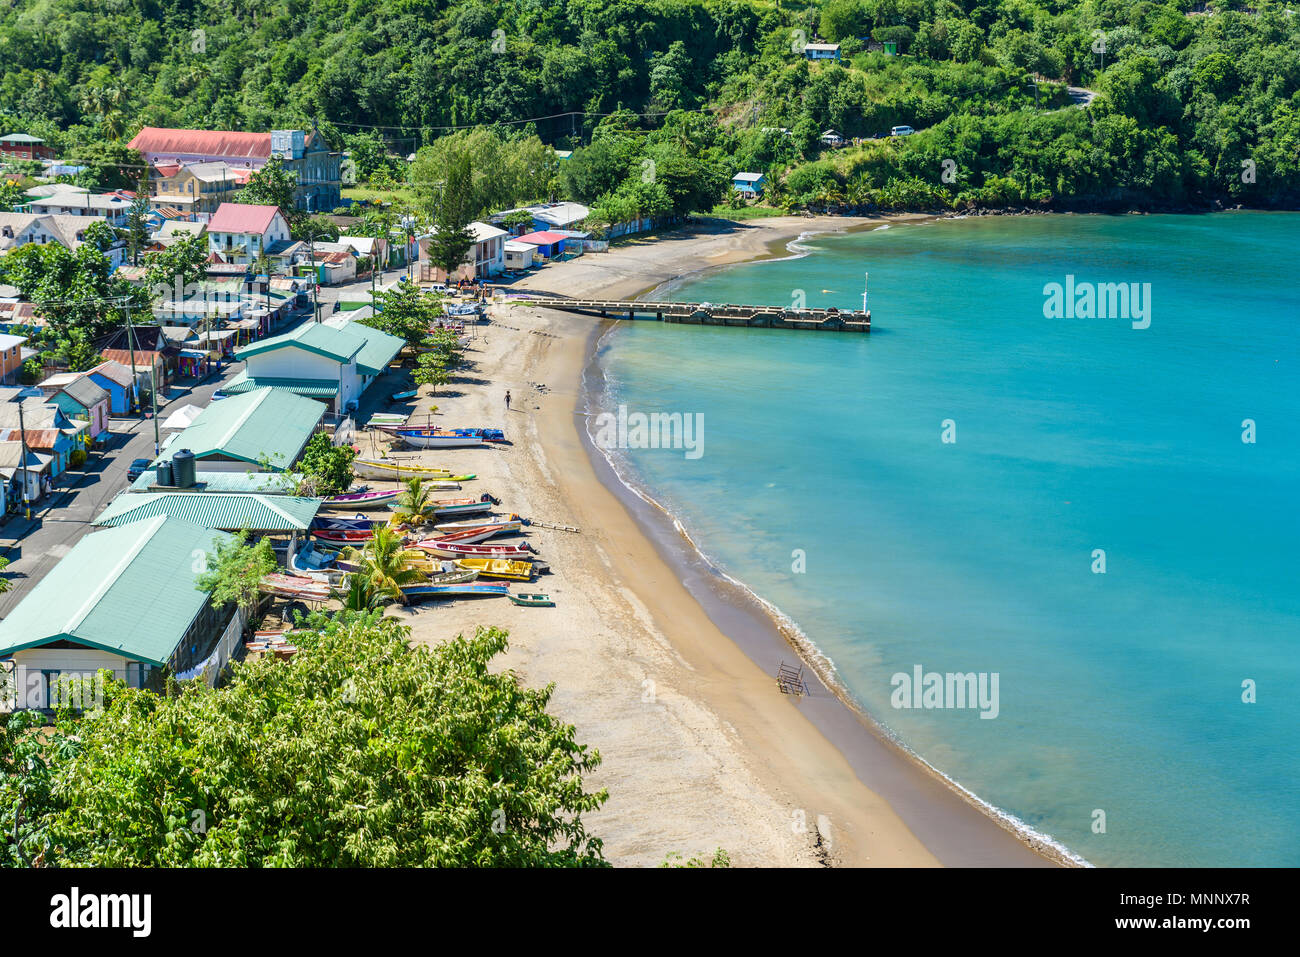 Anse La Raye - spiaggia tropicale sull'isola caraibica di Santa Lucia. Si tratta di una destinazione paradiso con una spiaggia di sabbia bianca e mare turquoiuse. Foto Stock